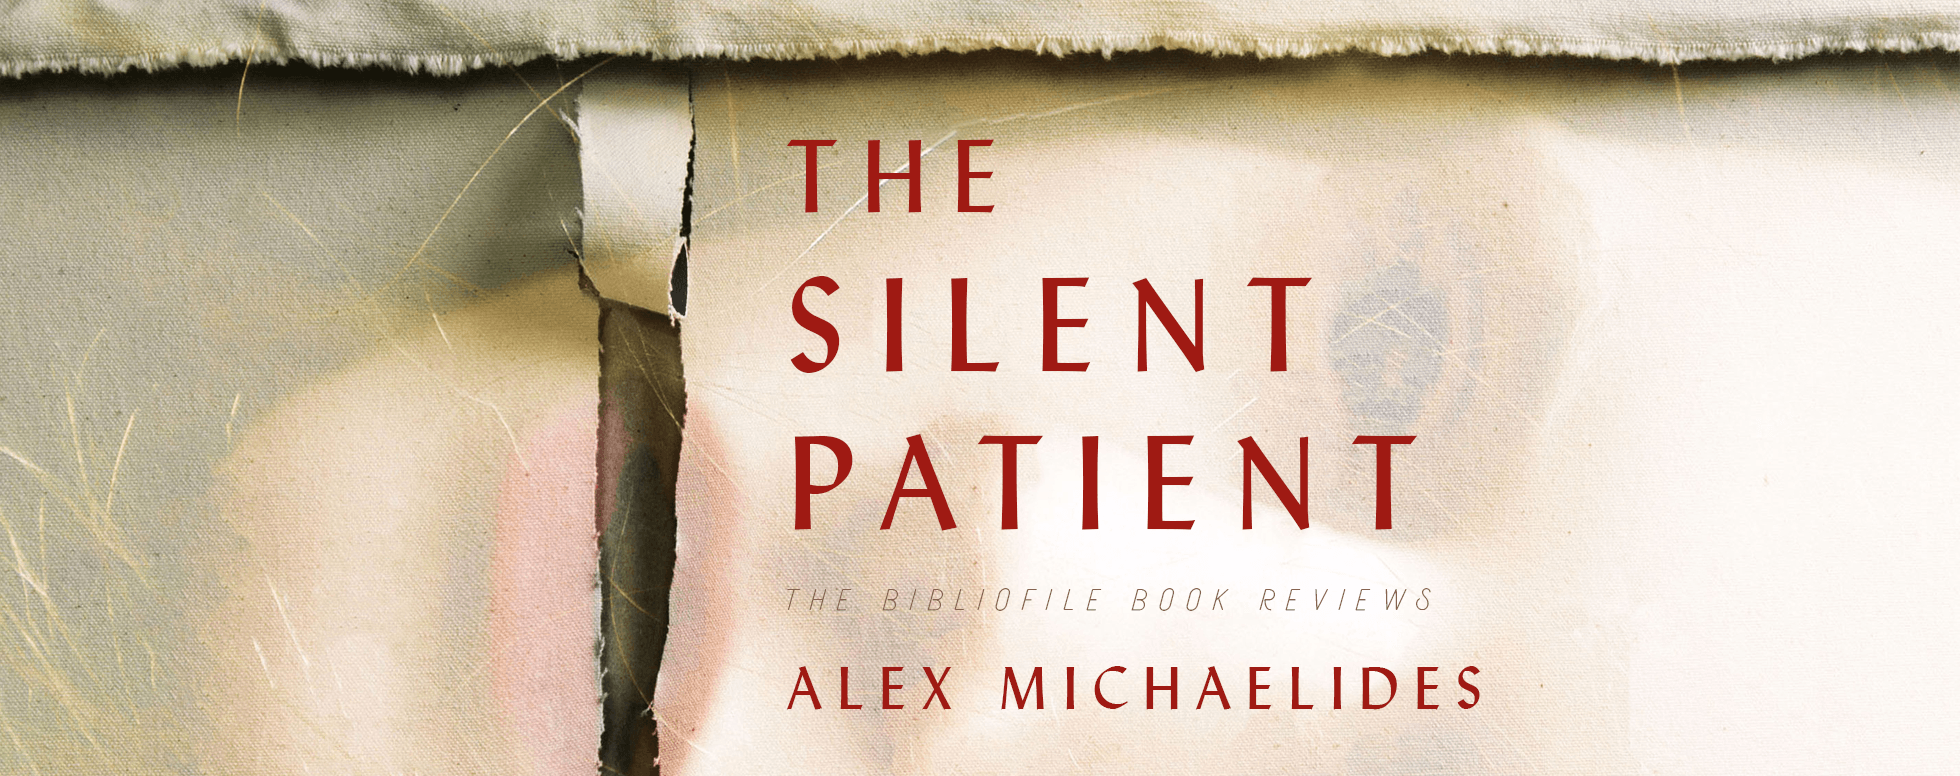 Get e-book The silent patient No Survey